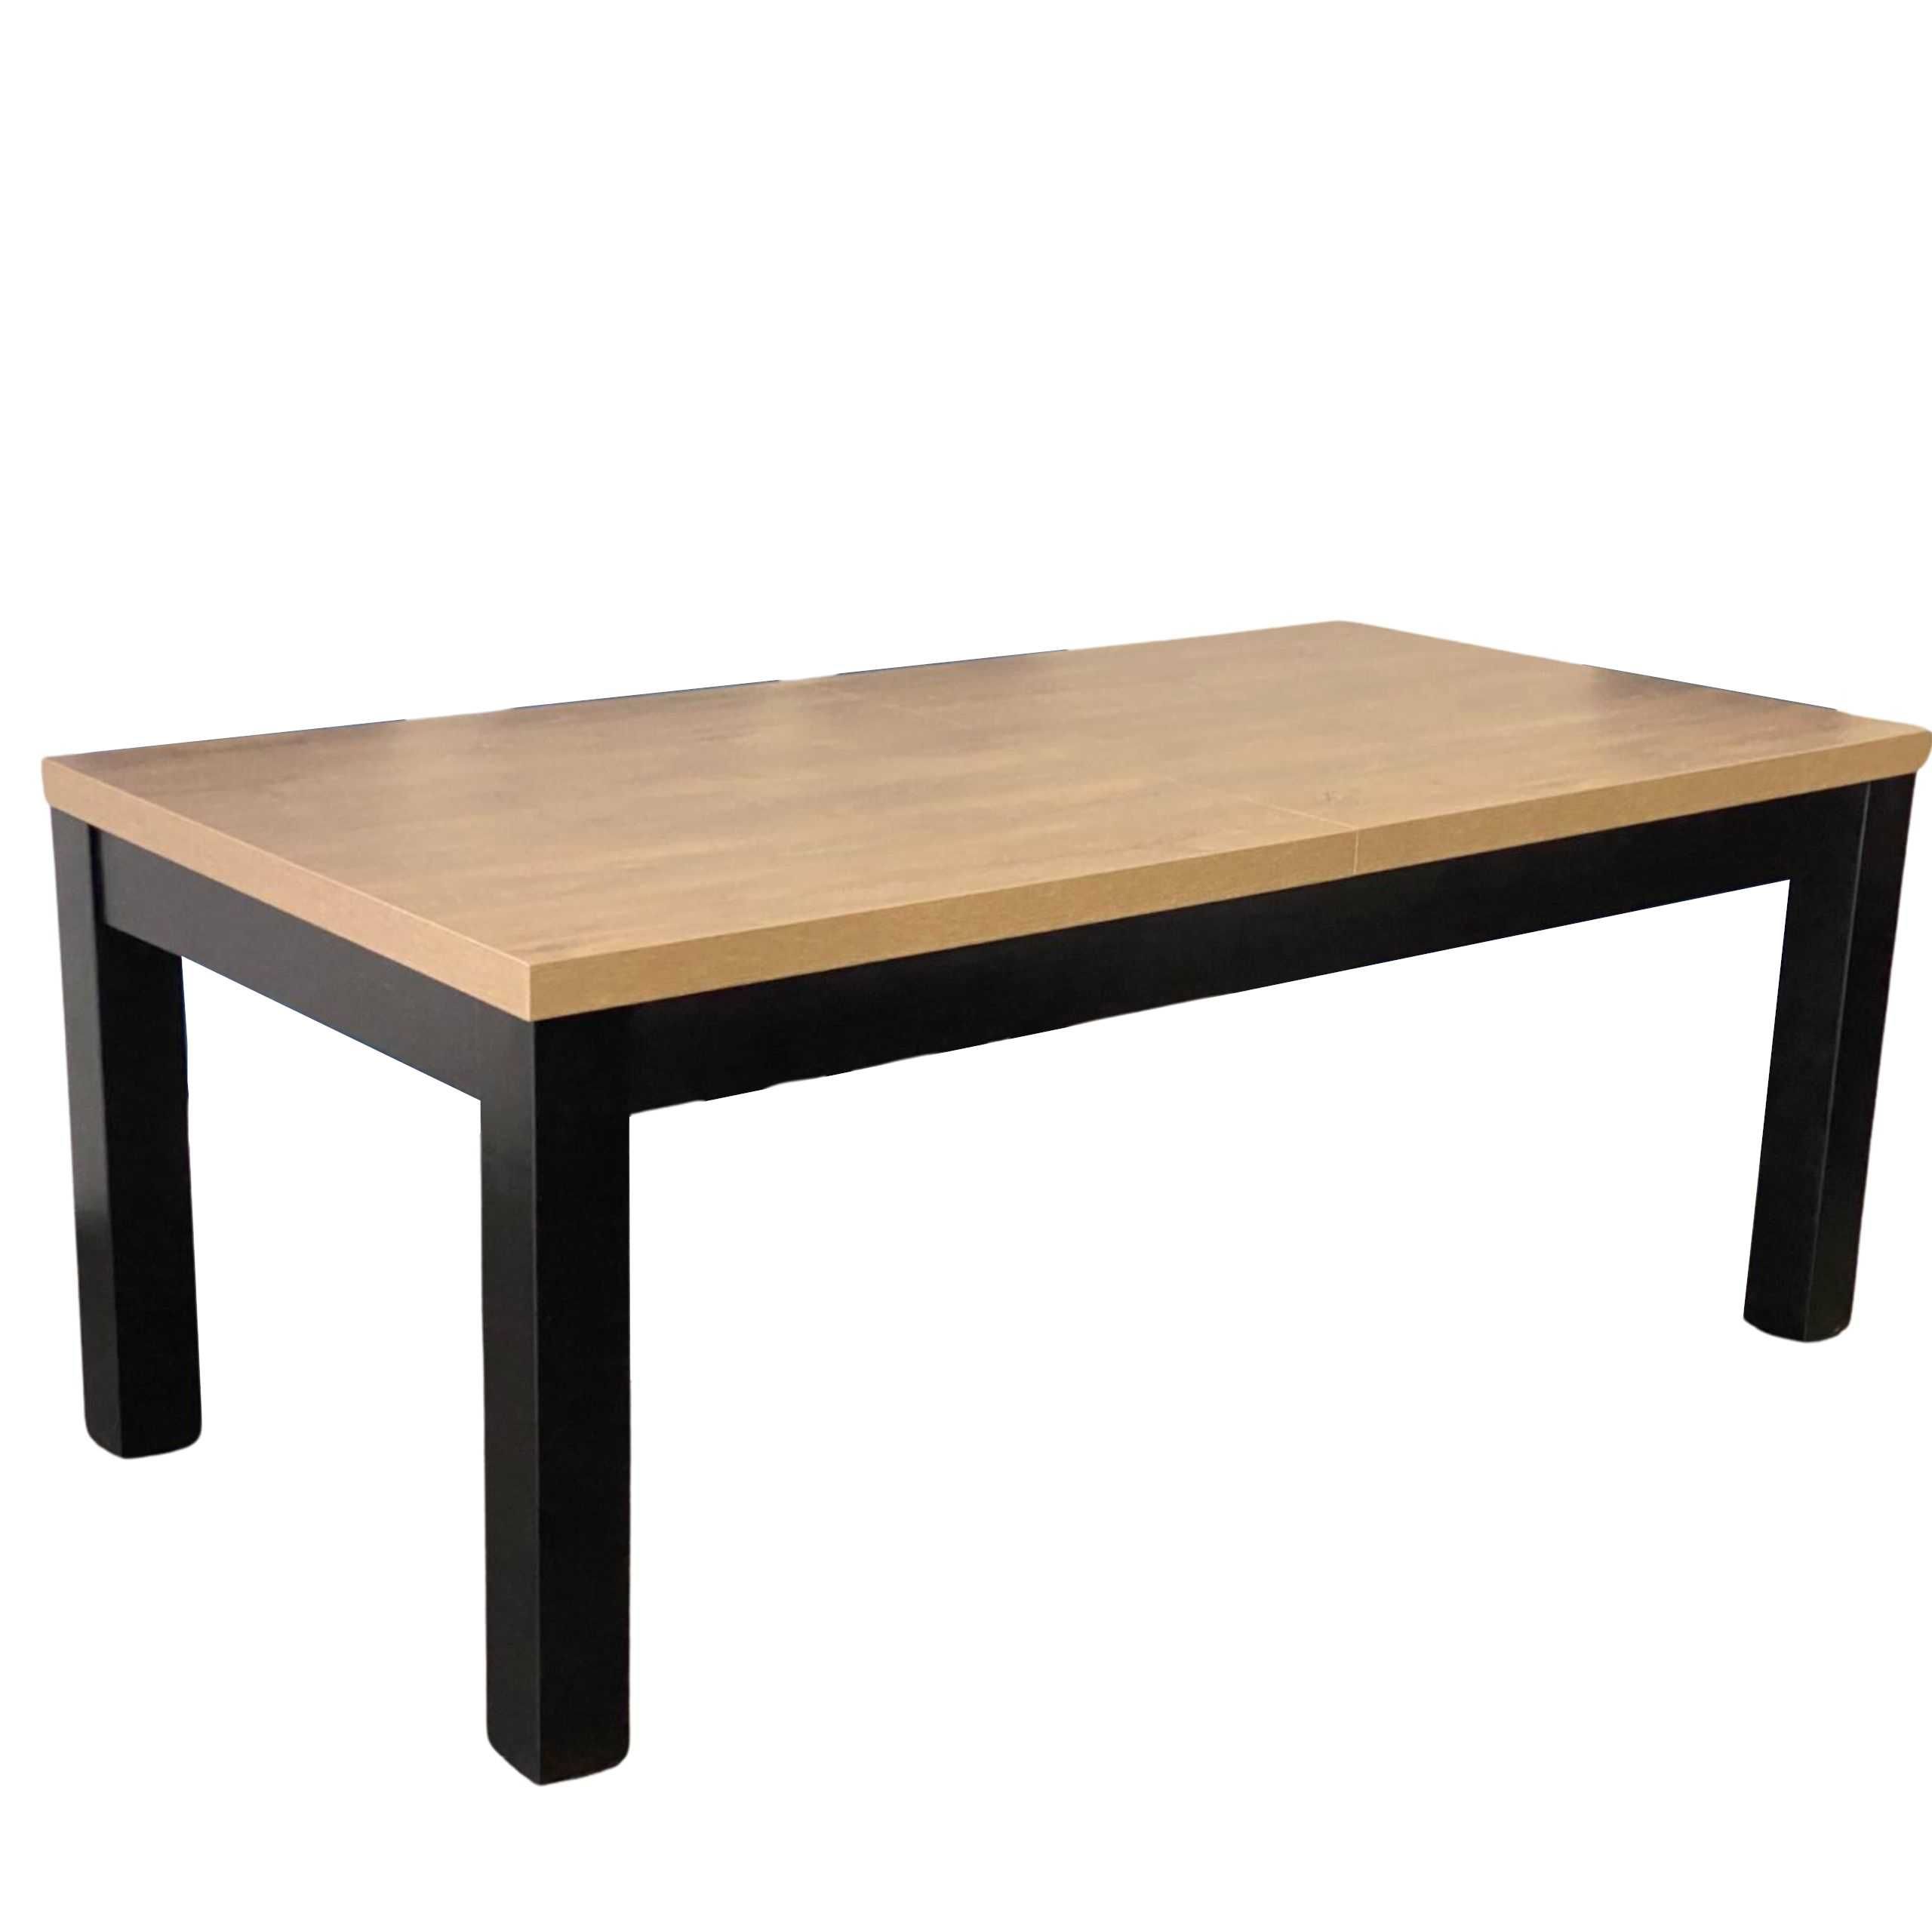 Drewniany stół 200/300cm Stół prostokątny w różnej kolorystyce